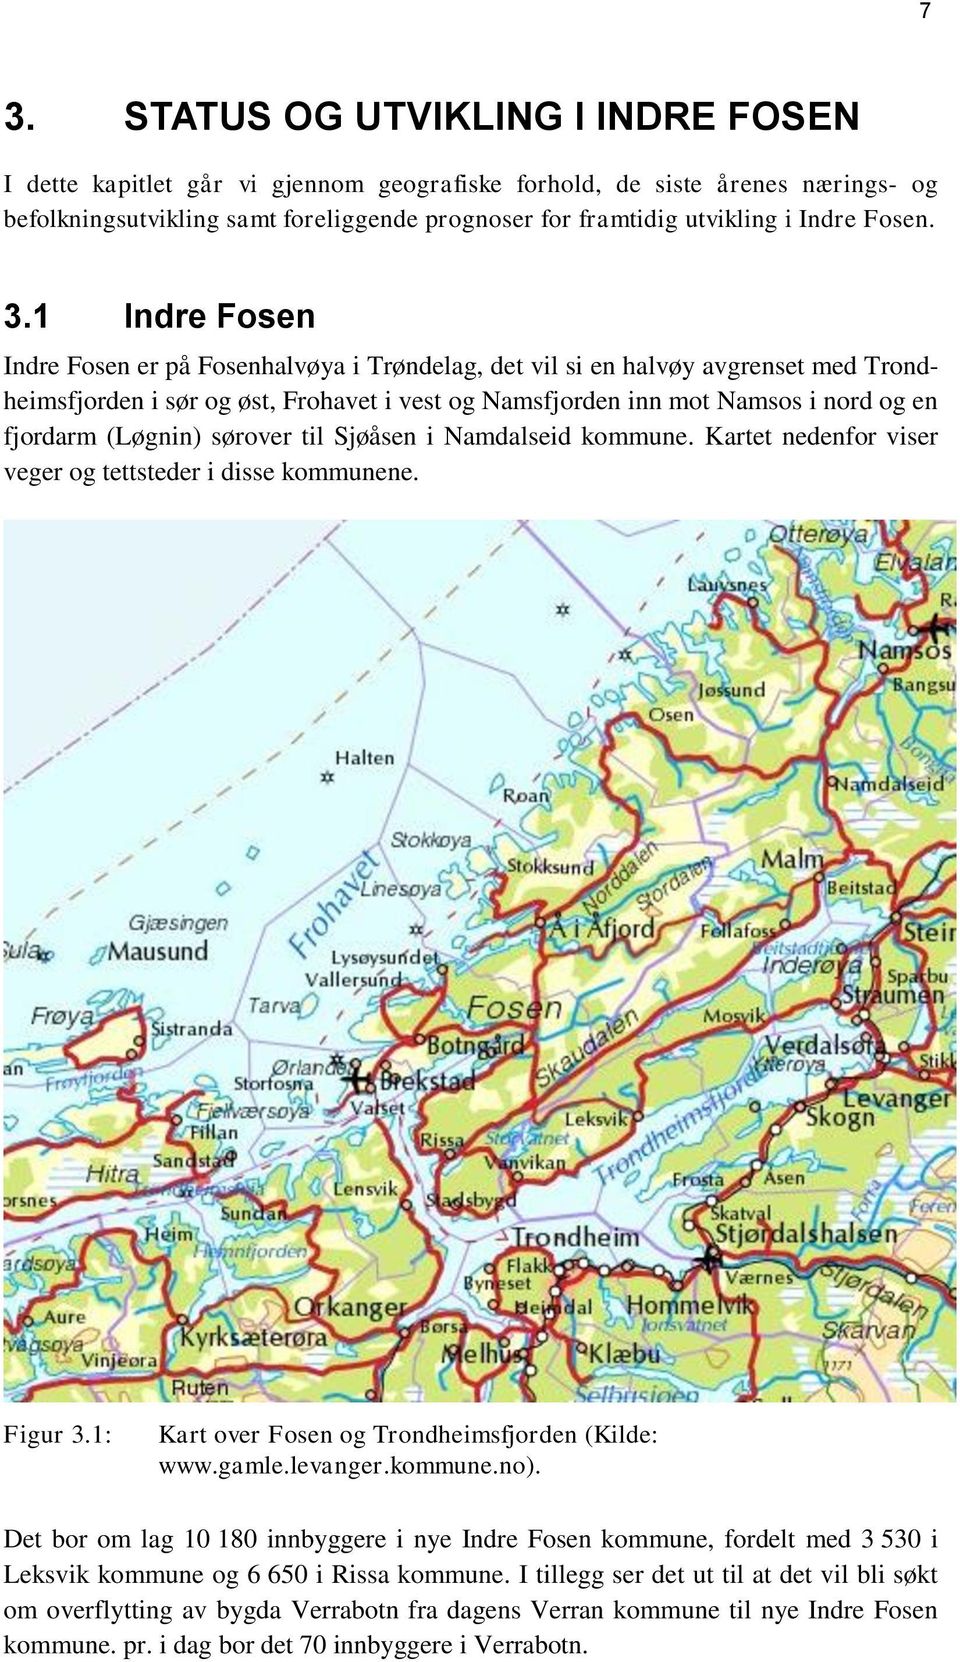 1 Indre Fosen Indre Fosen er på Fosenhalvøya i Trøndelag, det vil si en halvøy avgrenset med Trondheimsfjorden i sør og øst, Frohavet i vest og Namsfjorden inn mot Namsos i nord og en fjordarm